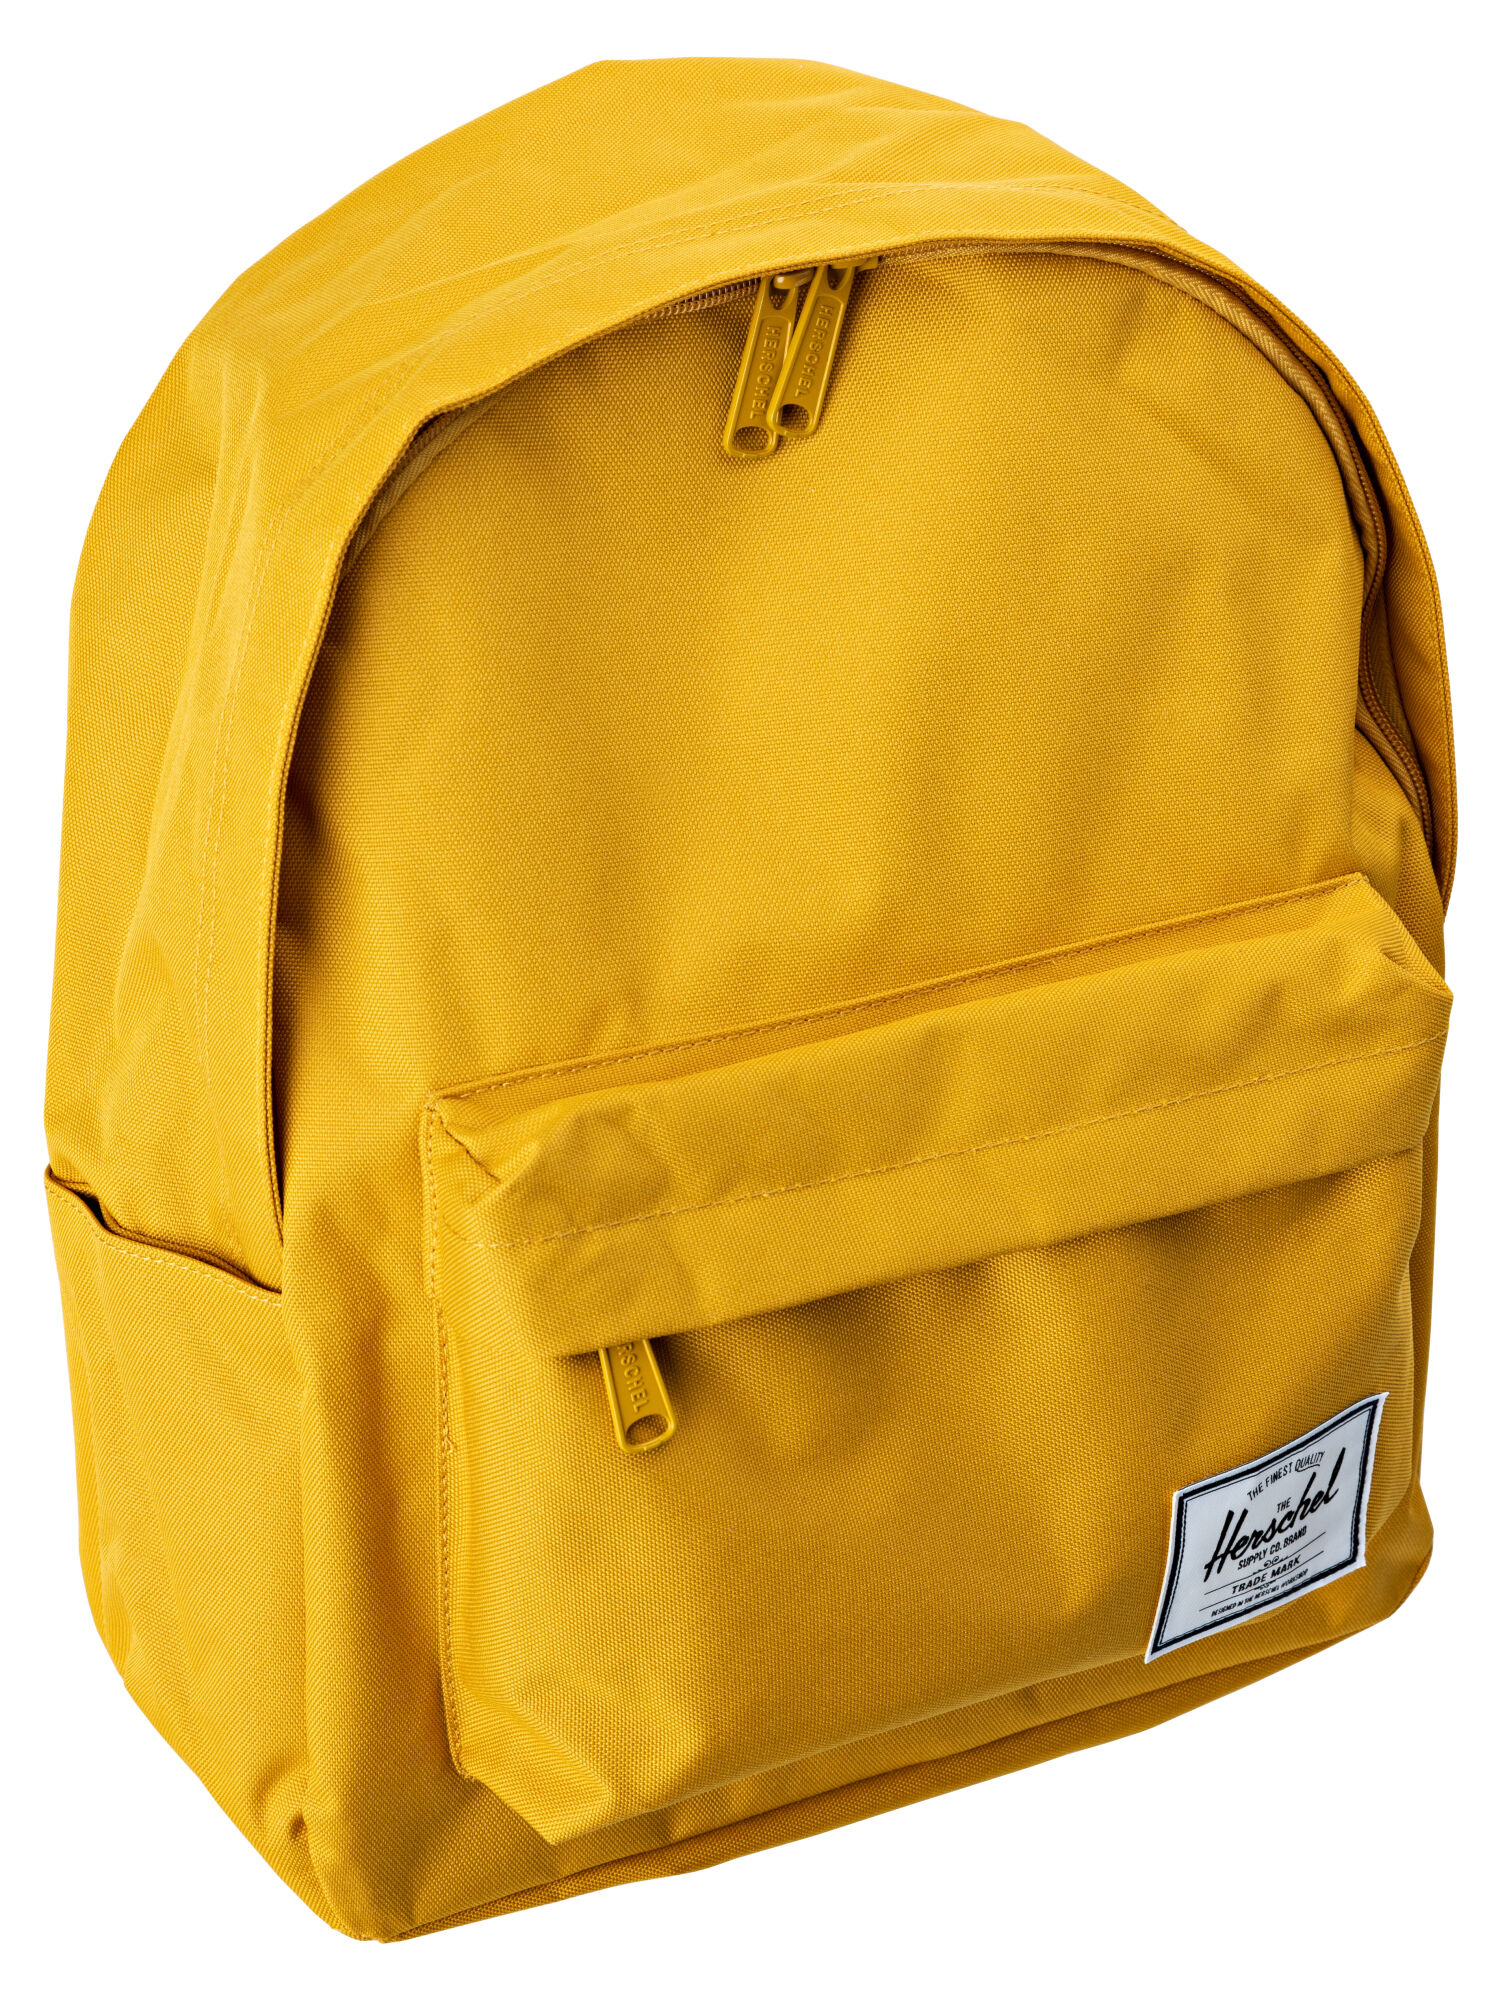 Рюкзак Herschel для женщин, жёлтый, OS, EUR, 10825-05128-OS